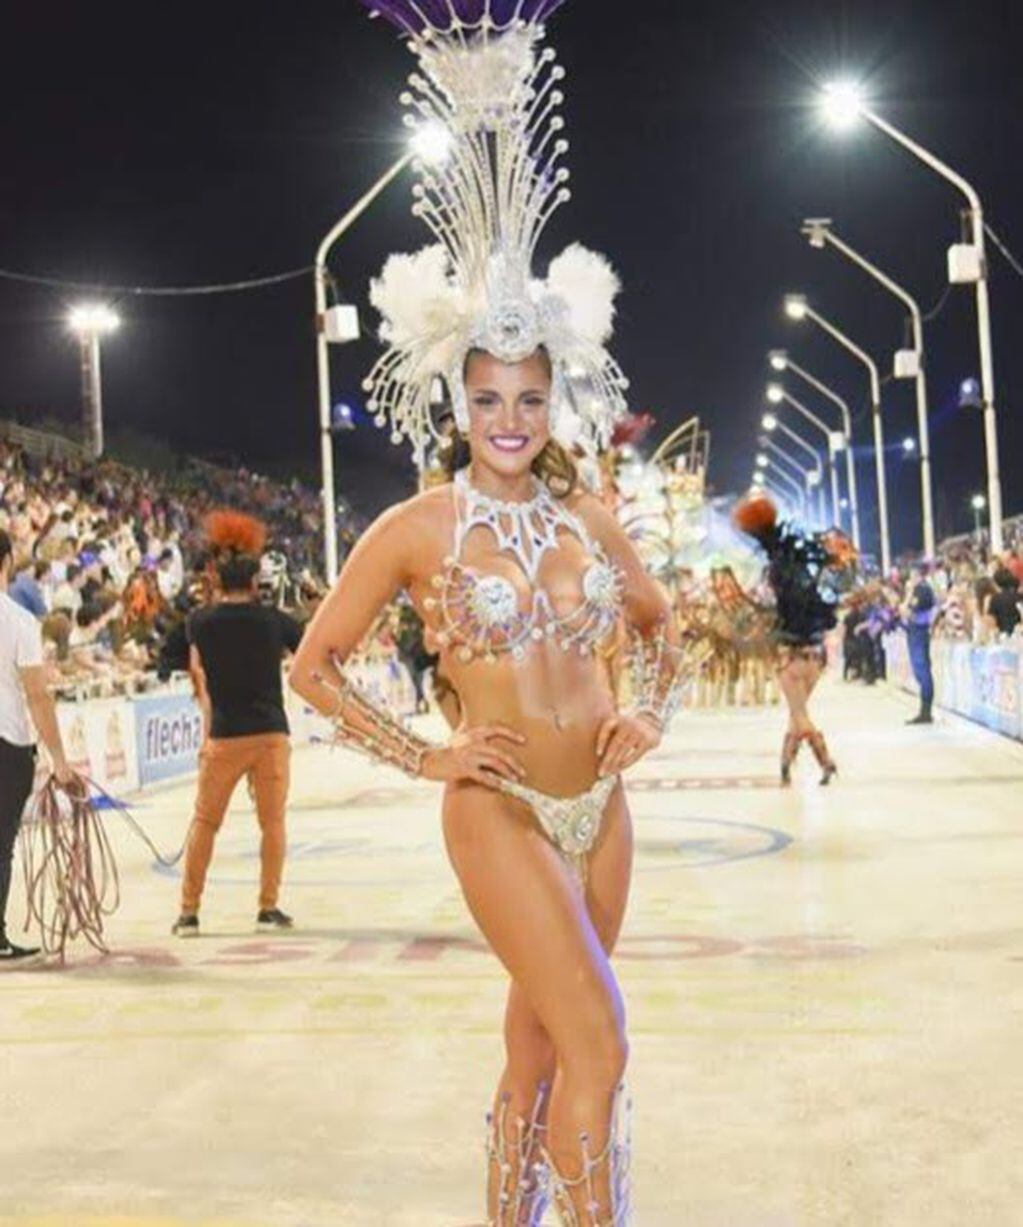 Valentina Riva
Crédito: Carnaval del país